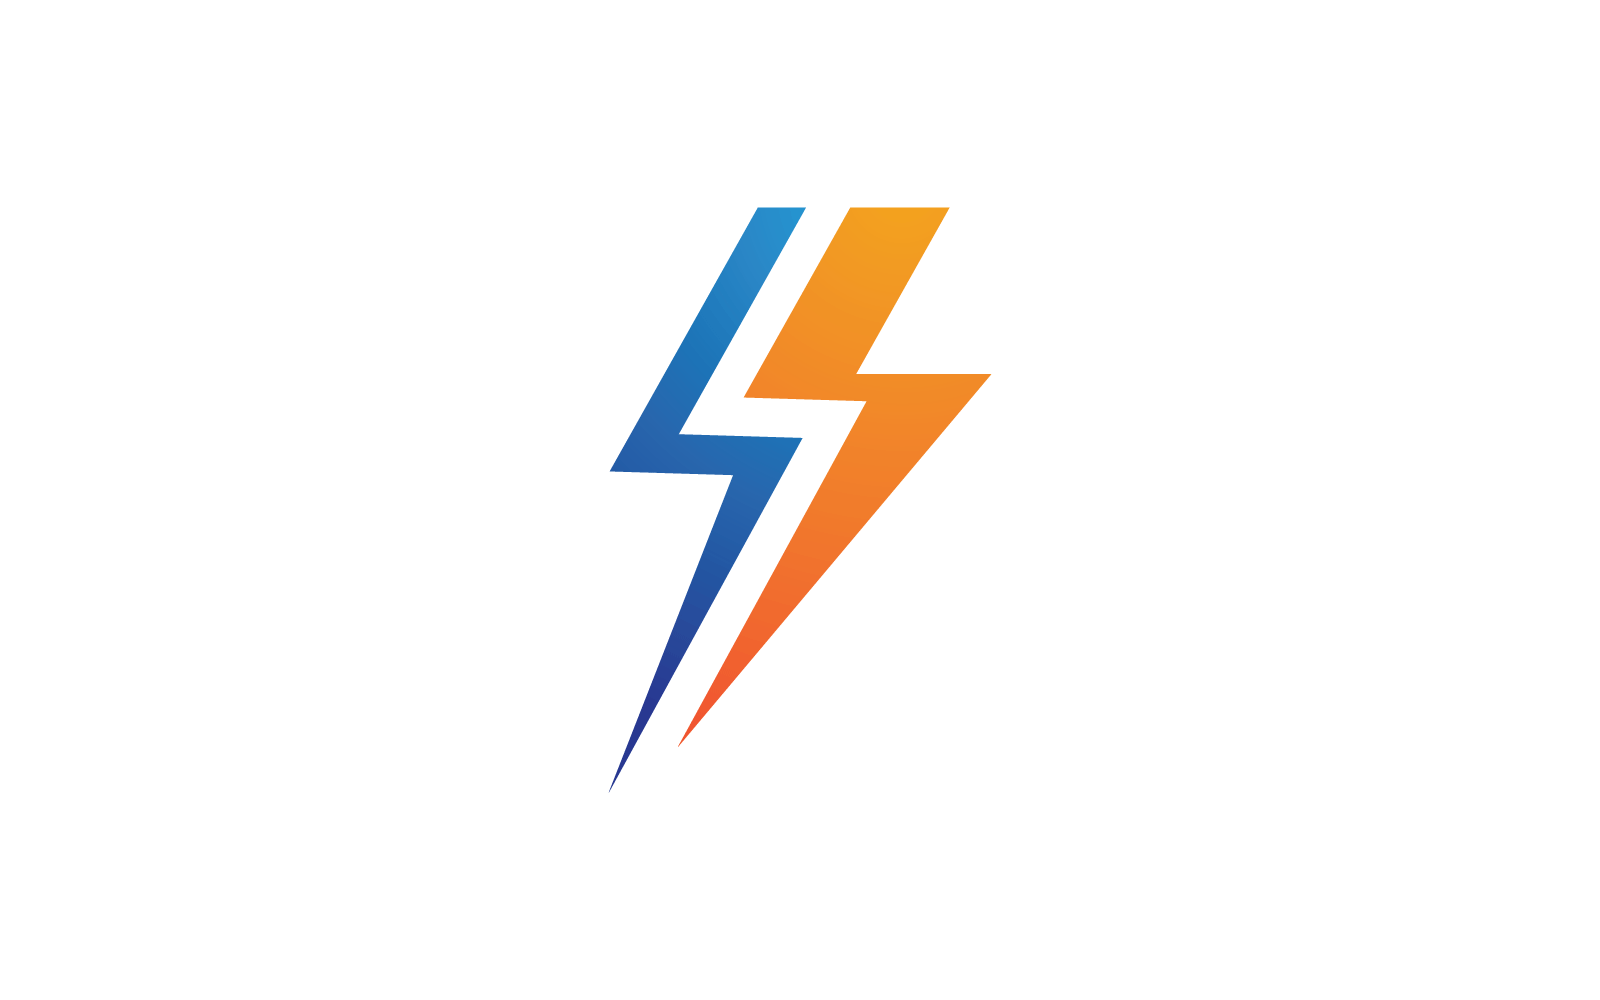 Power lightning power energy logo illustration flat design